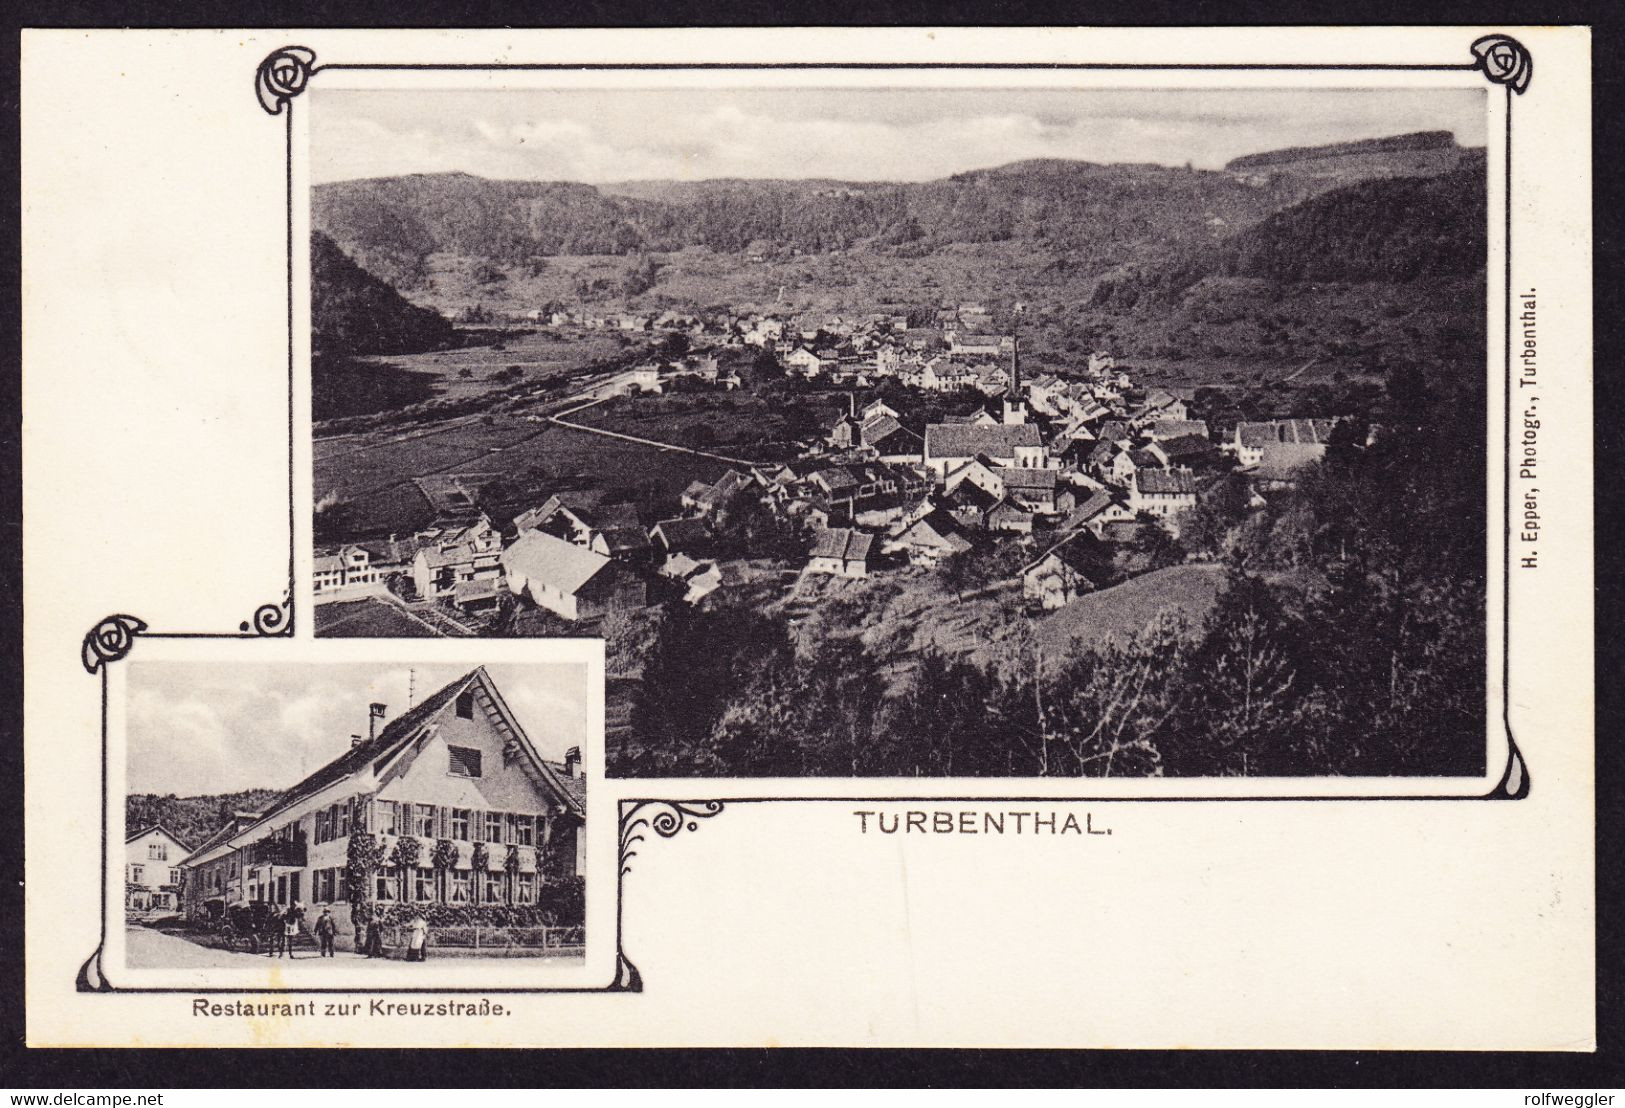 1922 Gelaufene AK Aus Turbenthal. Restaurant Zur Kreuzstrasse. Stempel Turbenthal. - Turbenthal